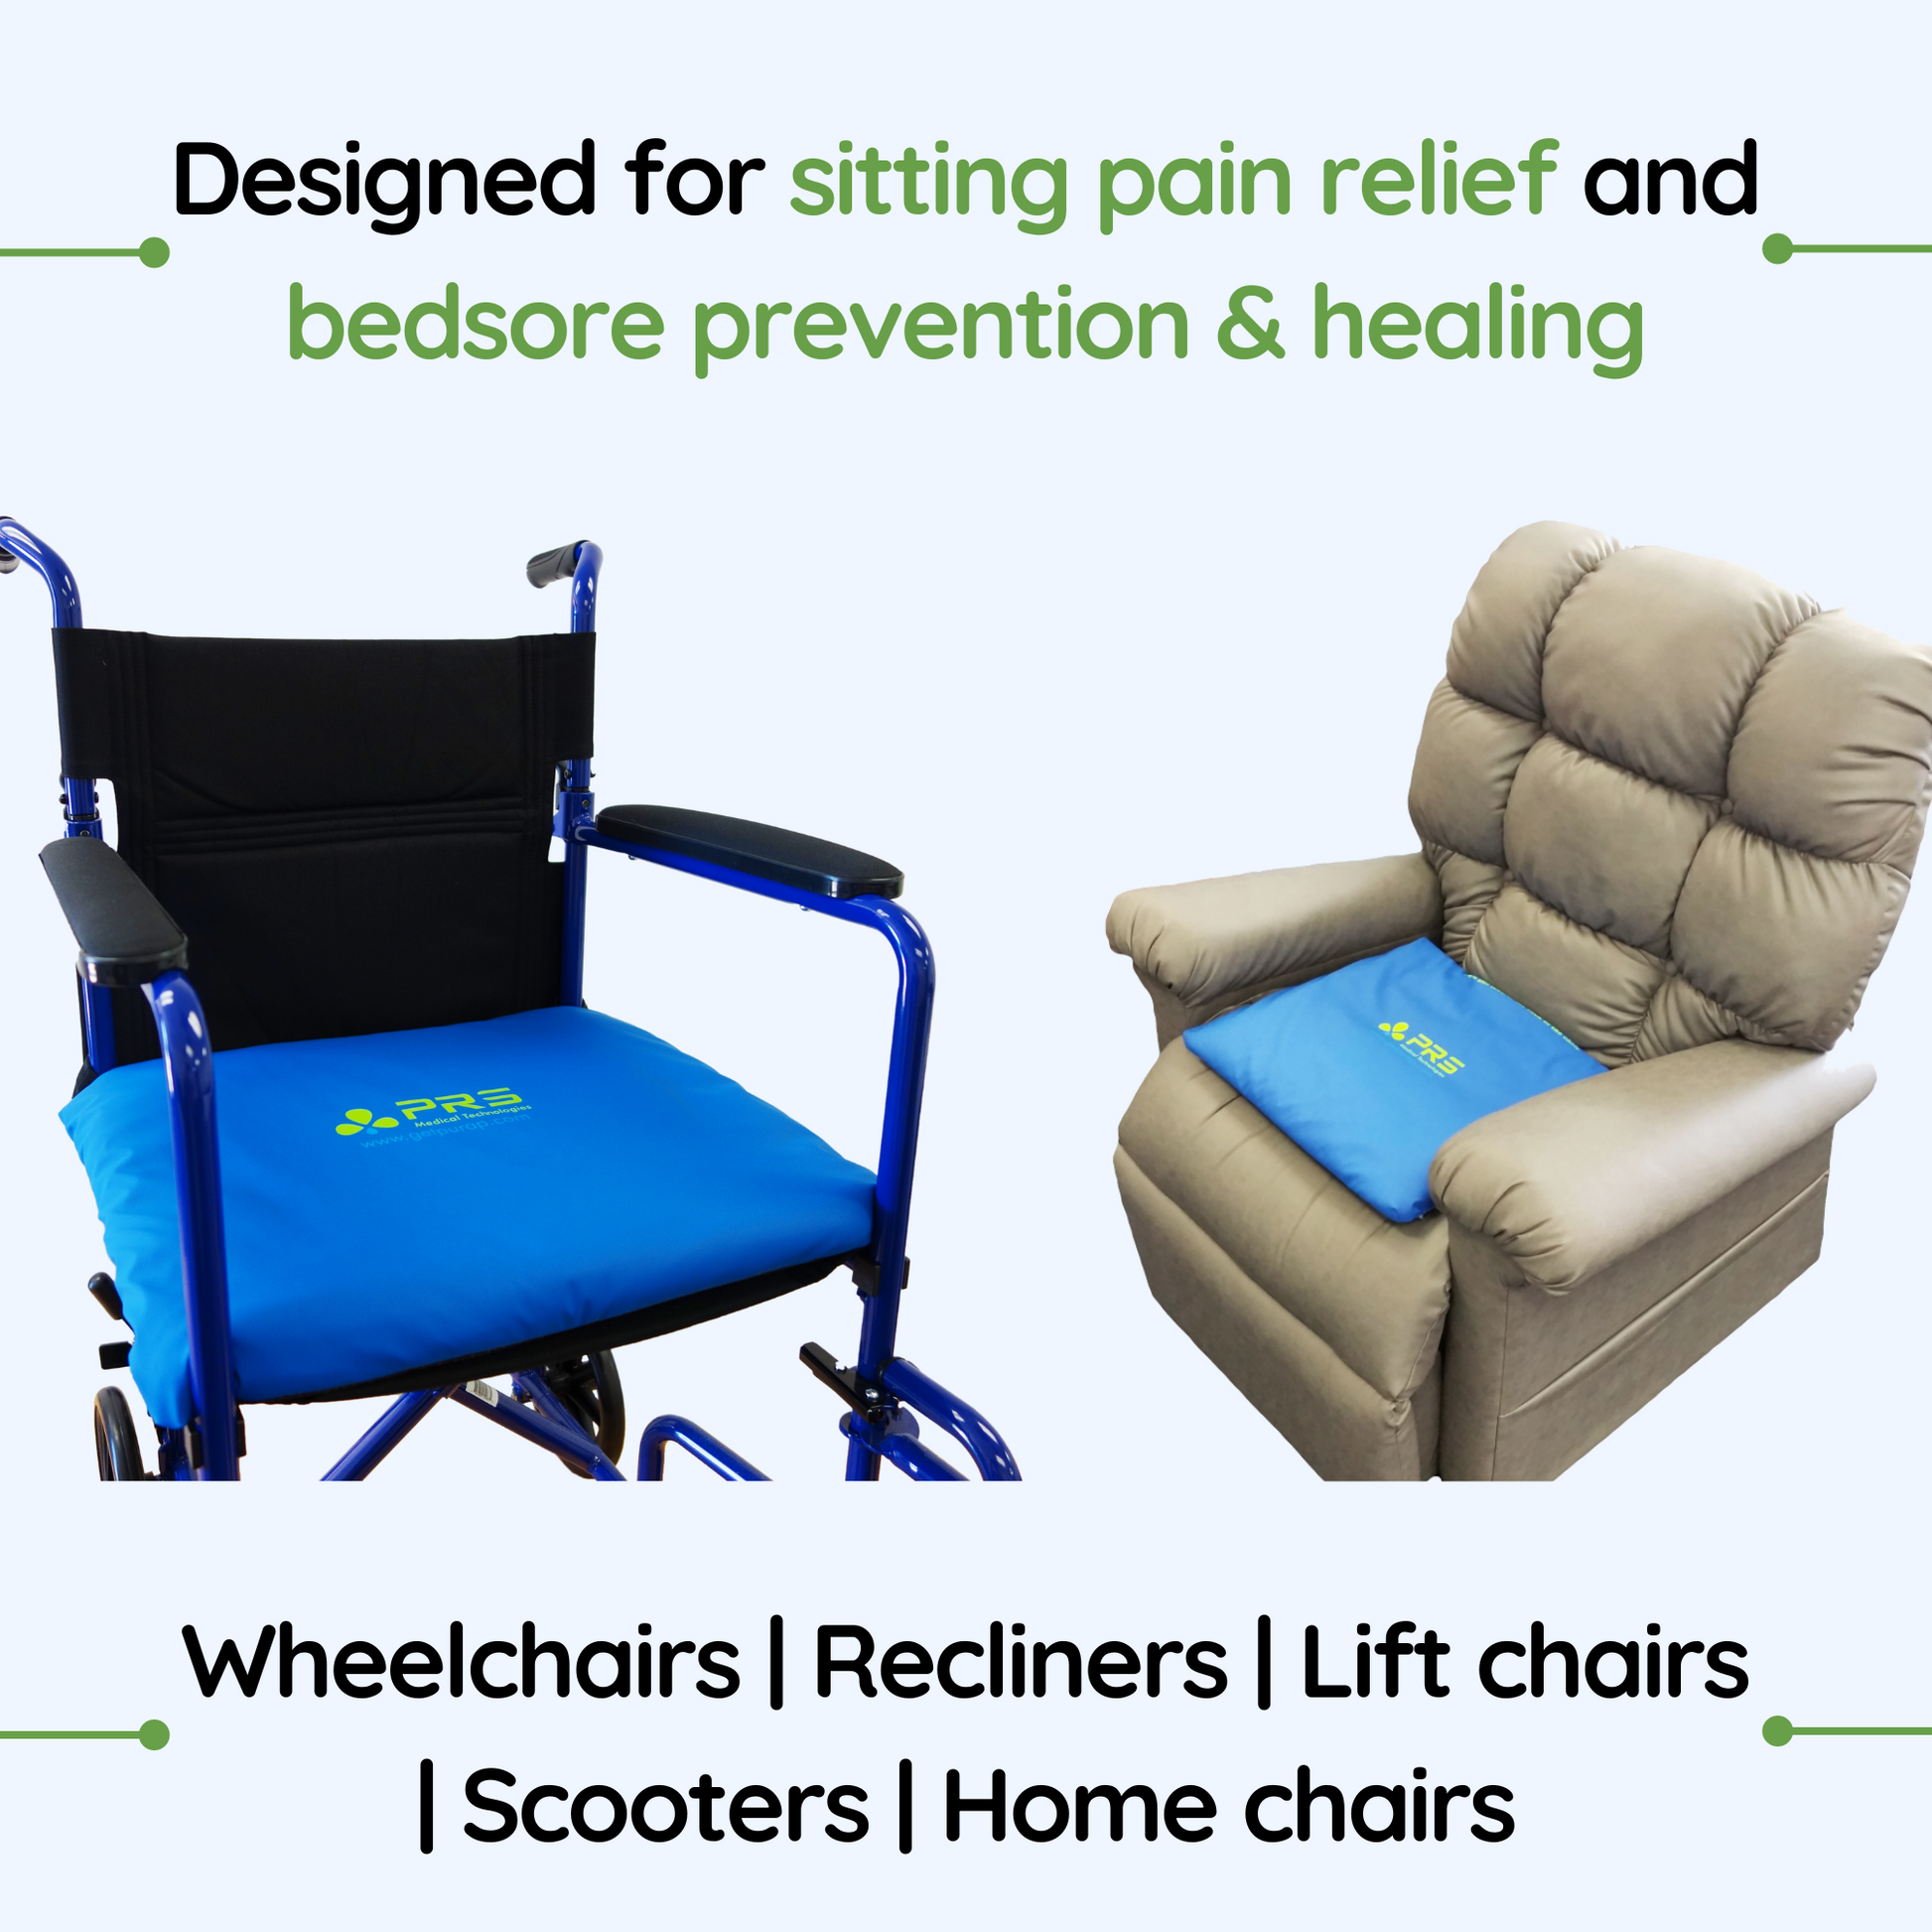 PURAP U-Float Seat Cushion for Coccyx, Tailbone, Sciatica Pain Relief